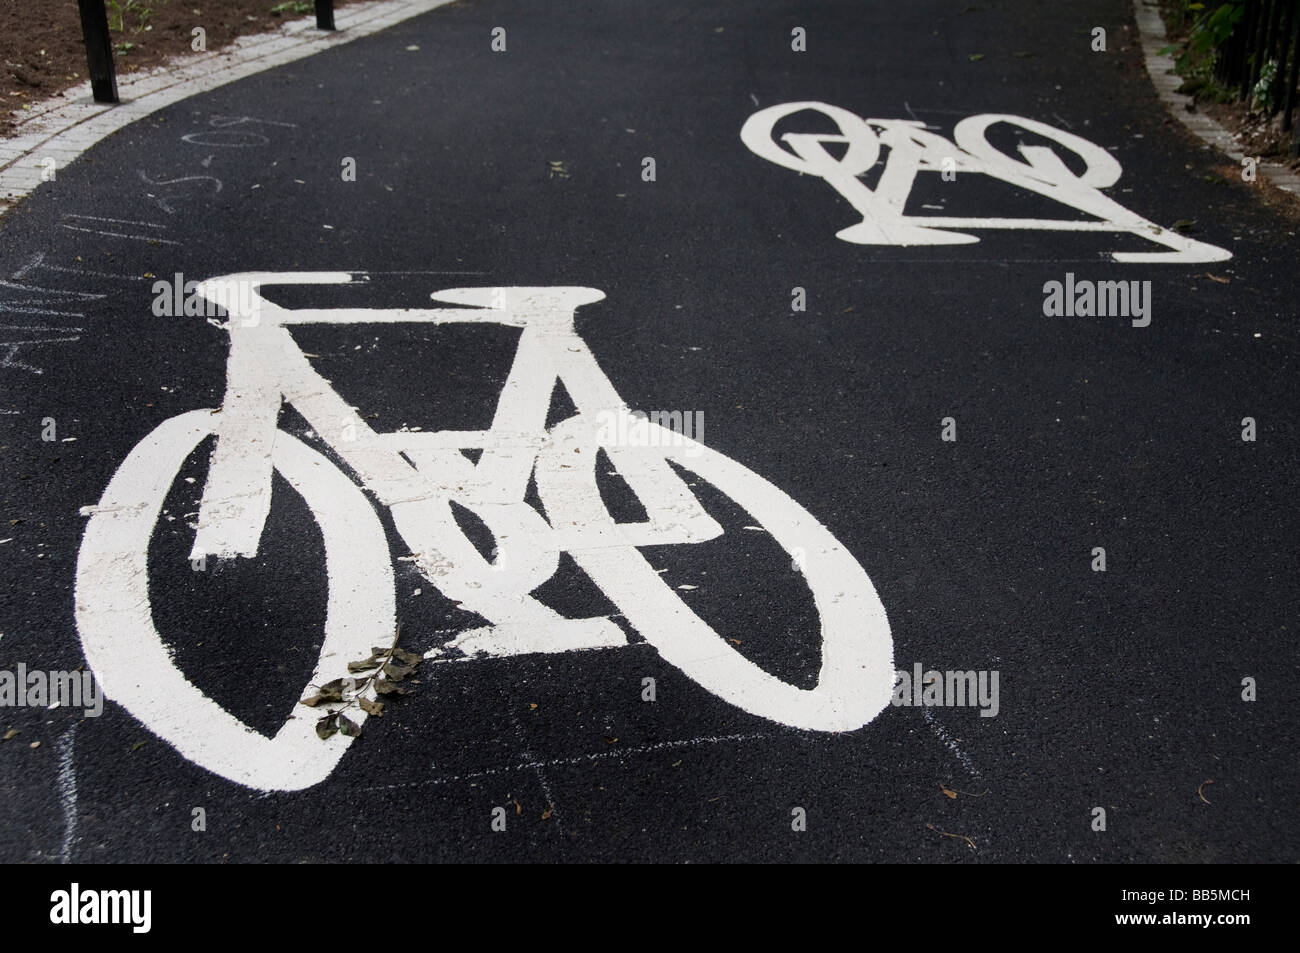 Hackney Bicyle simboli disegnati sulla strada per denotare una pista ciclabile Foto Stock